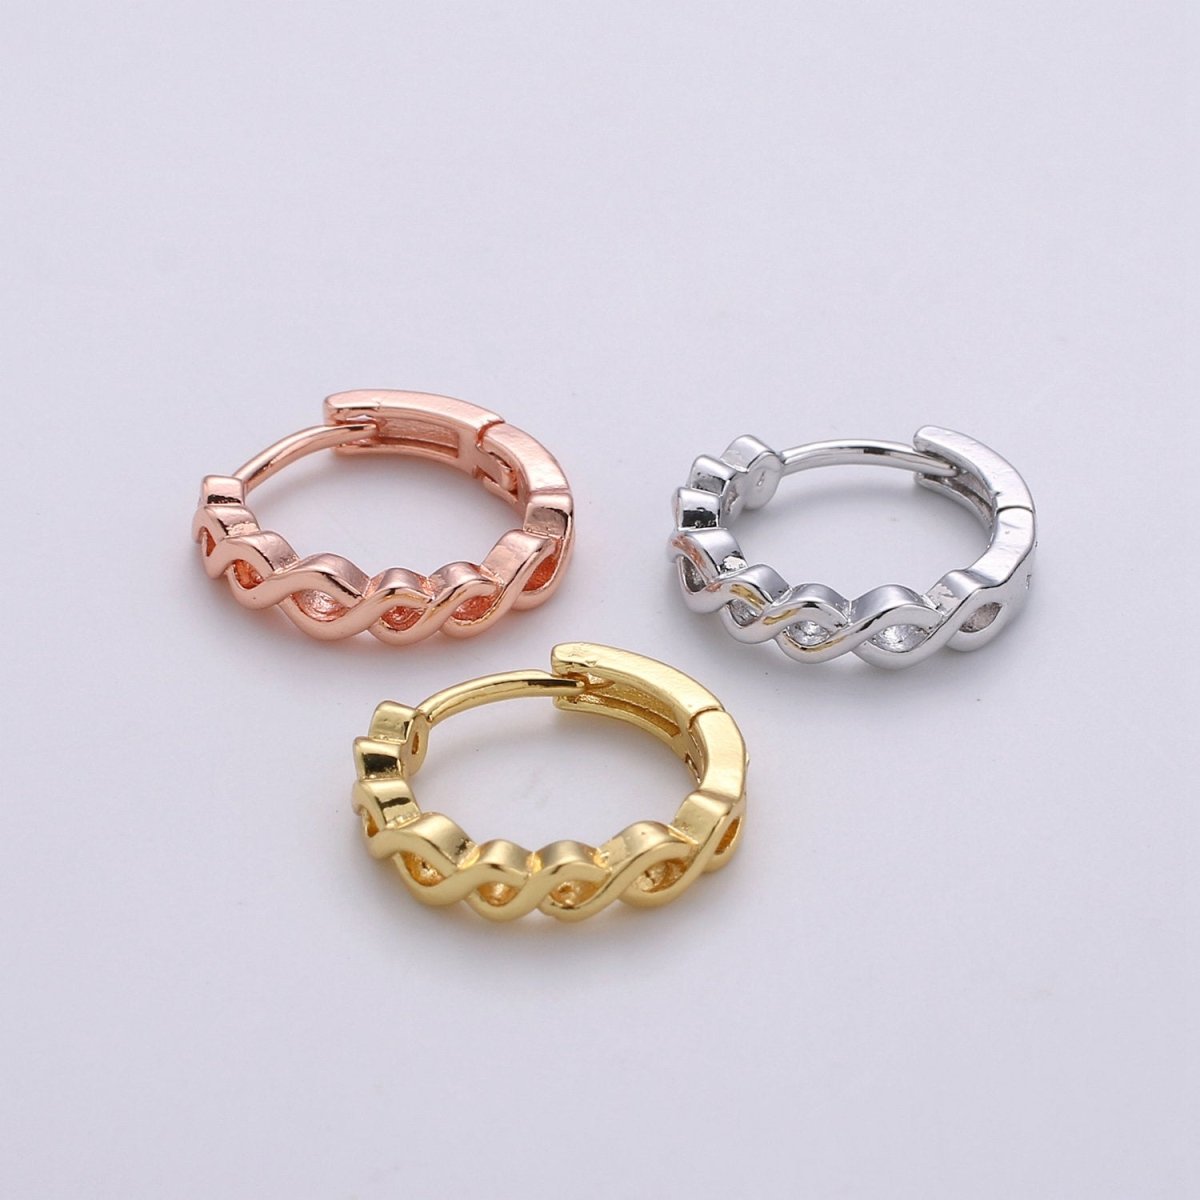 24k Vermeil Gold Earrings, Huggie Earring, Tiny Earrings, Twisted Vine Earrings, Everyday Wear Earrings, Rosegold Earring, Silver Earring K-693 K-694 K-695 - DLUXCA